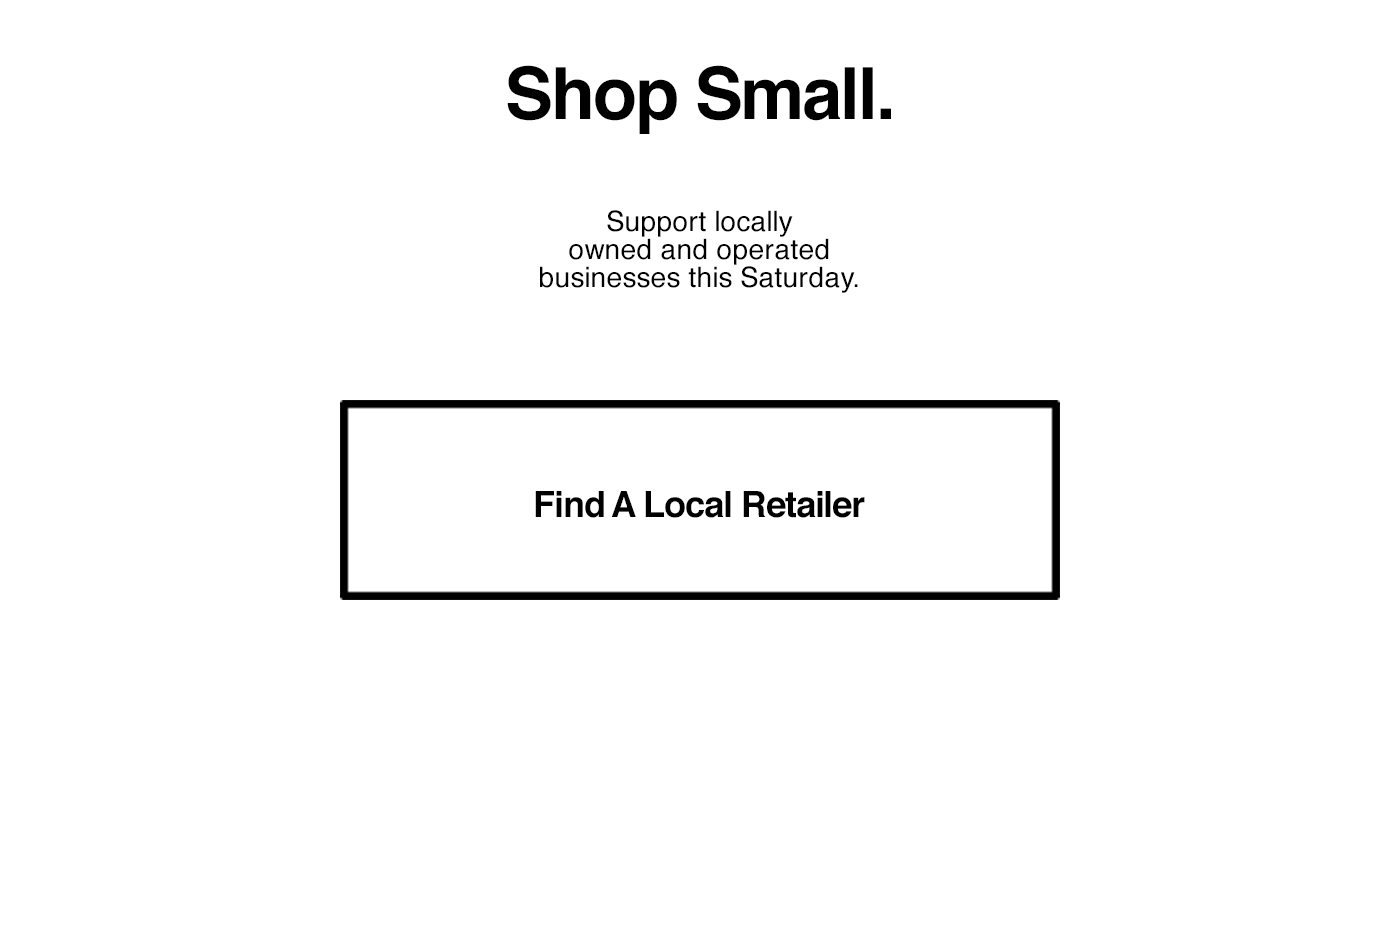 Find a Local Retailer